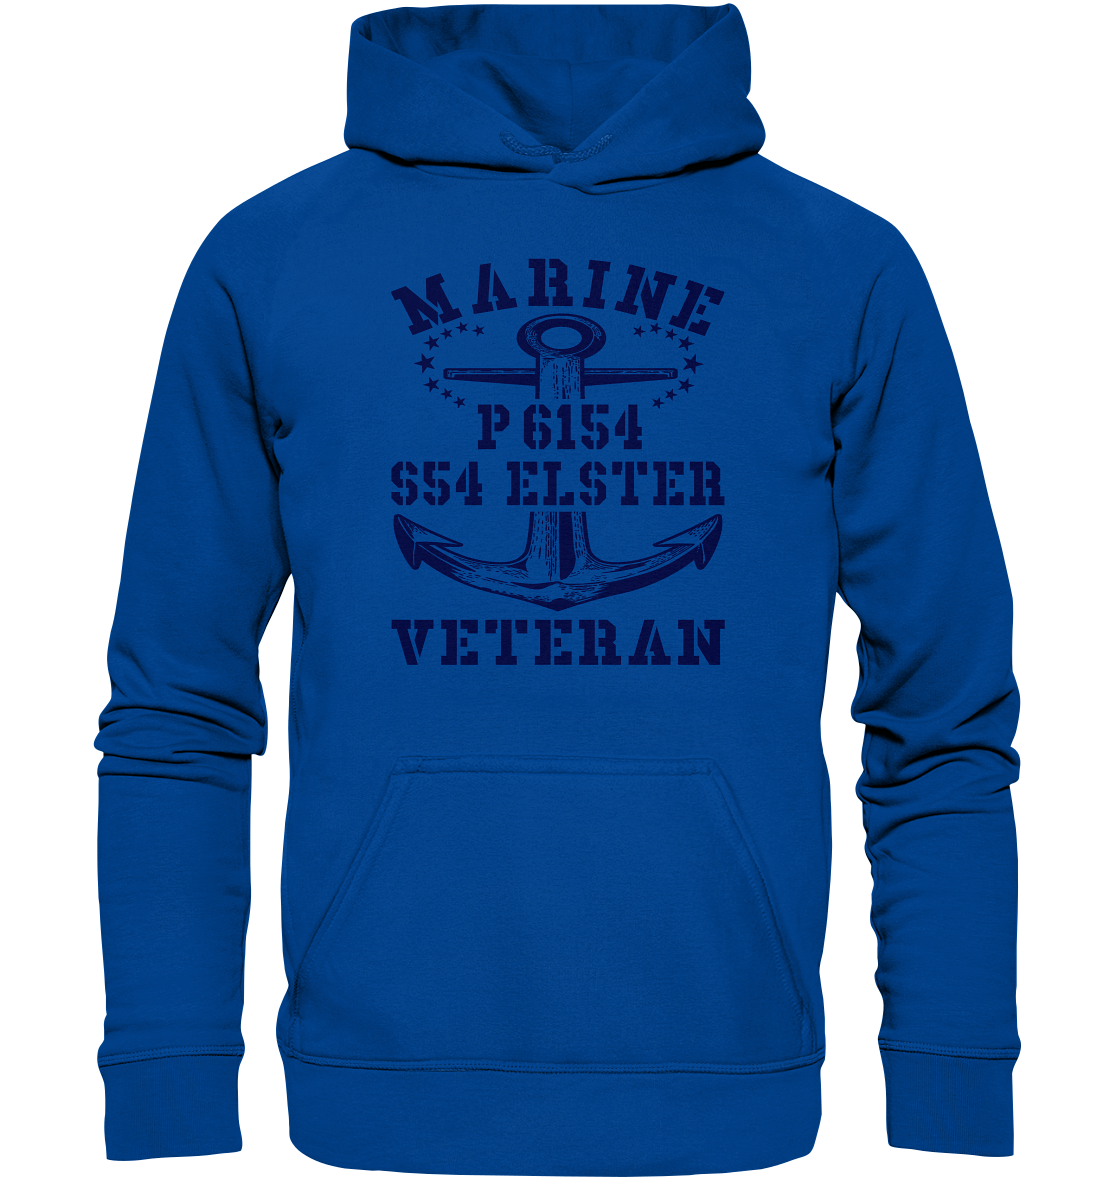 P6154 S54 ELSTER Marine Veteran - Basic Unisex Hoodie